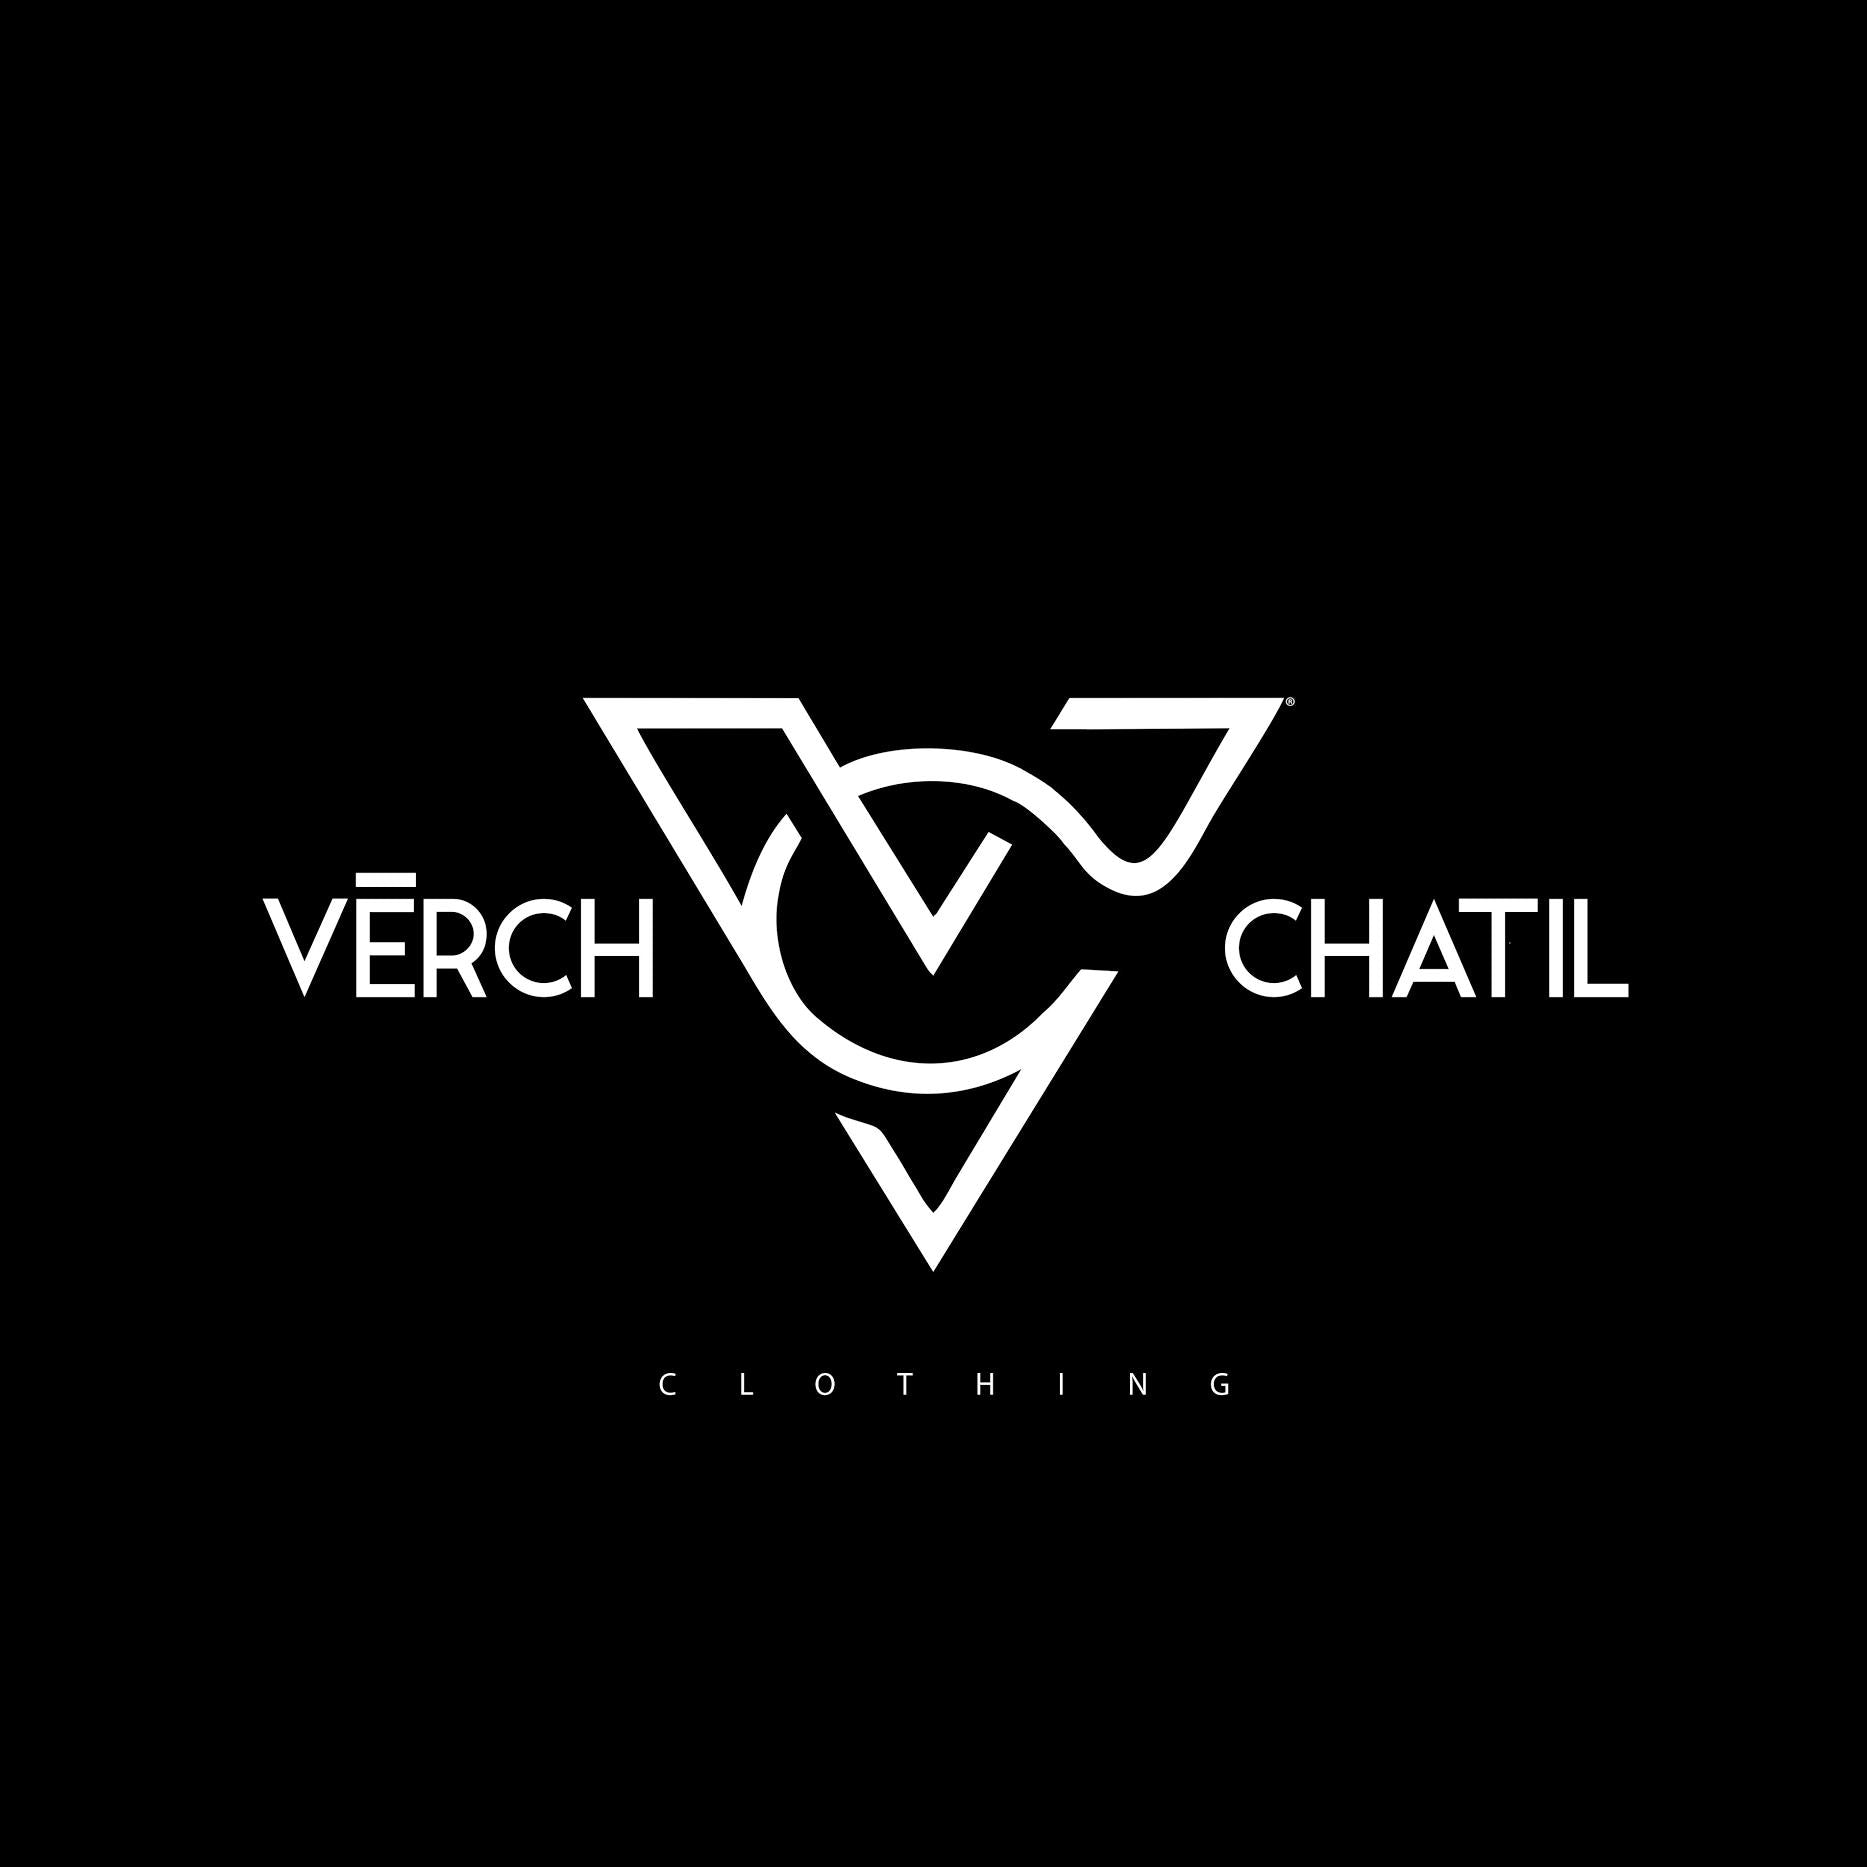 V-Sport by Verch - Chatil